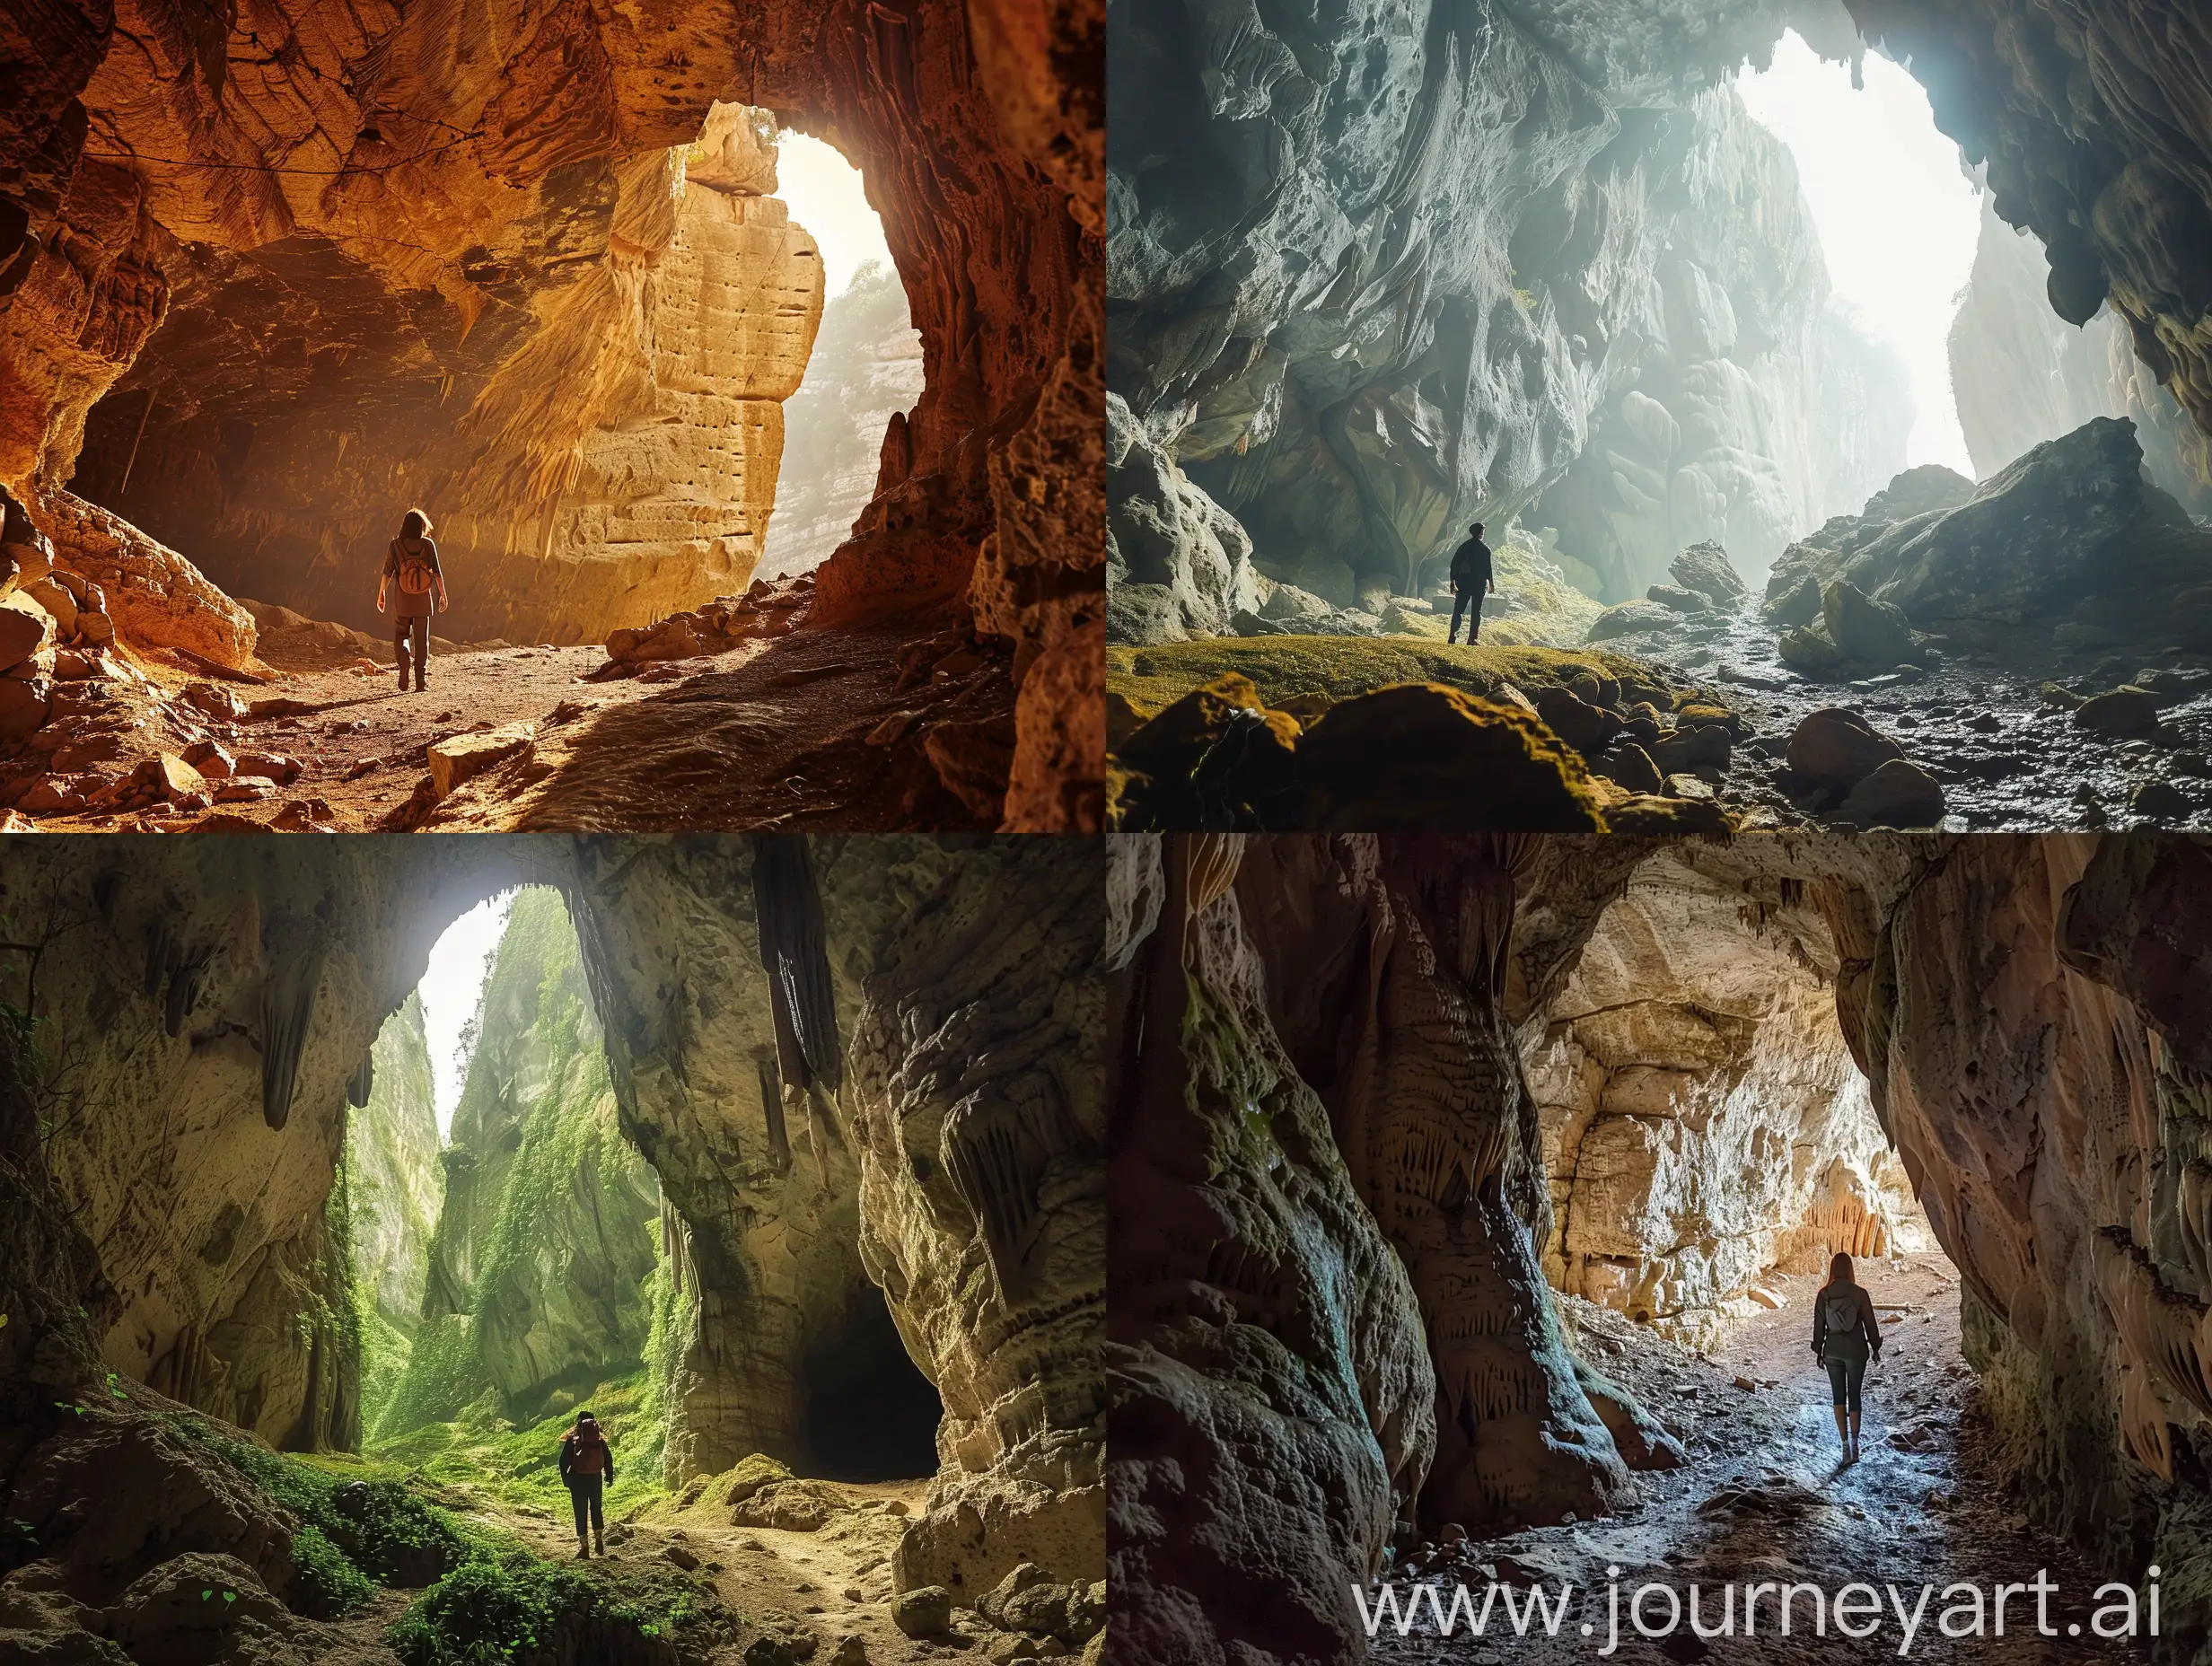 Exploring-a-Mystical-Cave-Landscape-at-Dawn